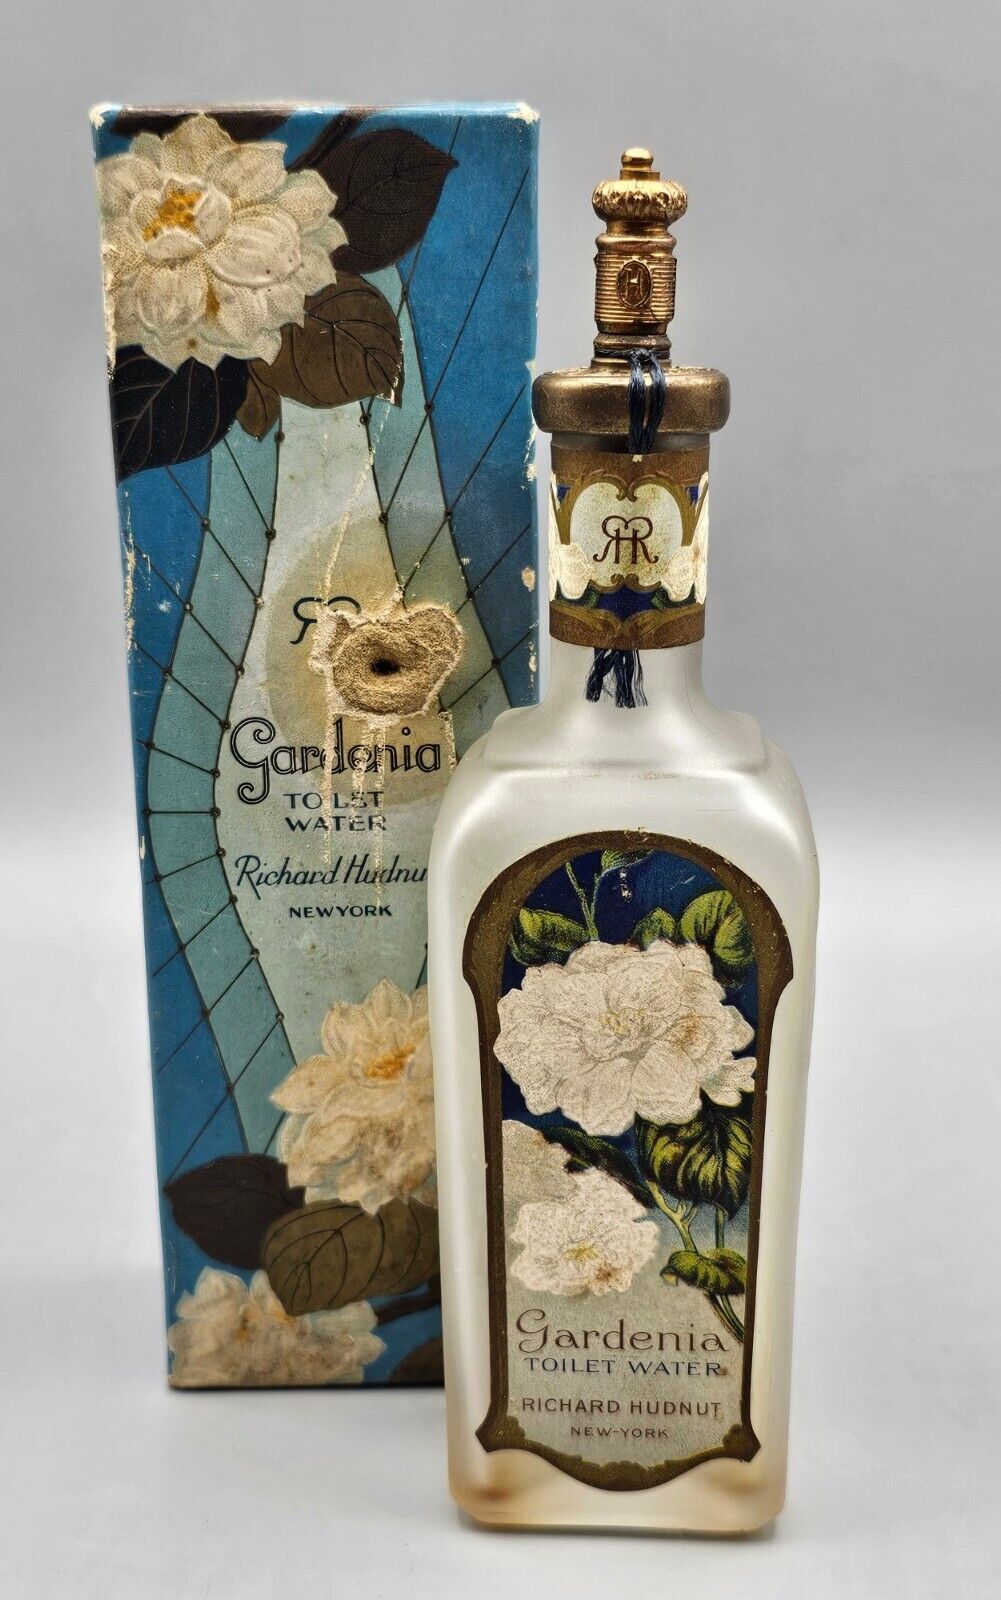 VTG Richard Hudnut Gardenia Toilet Water Embossed Glass Bottle w/Original Box